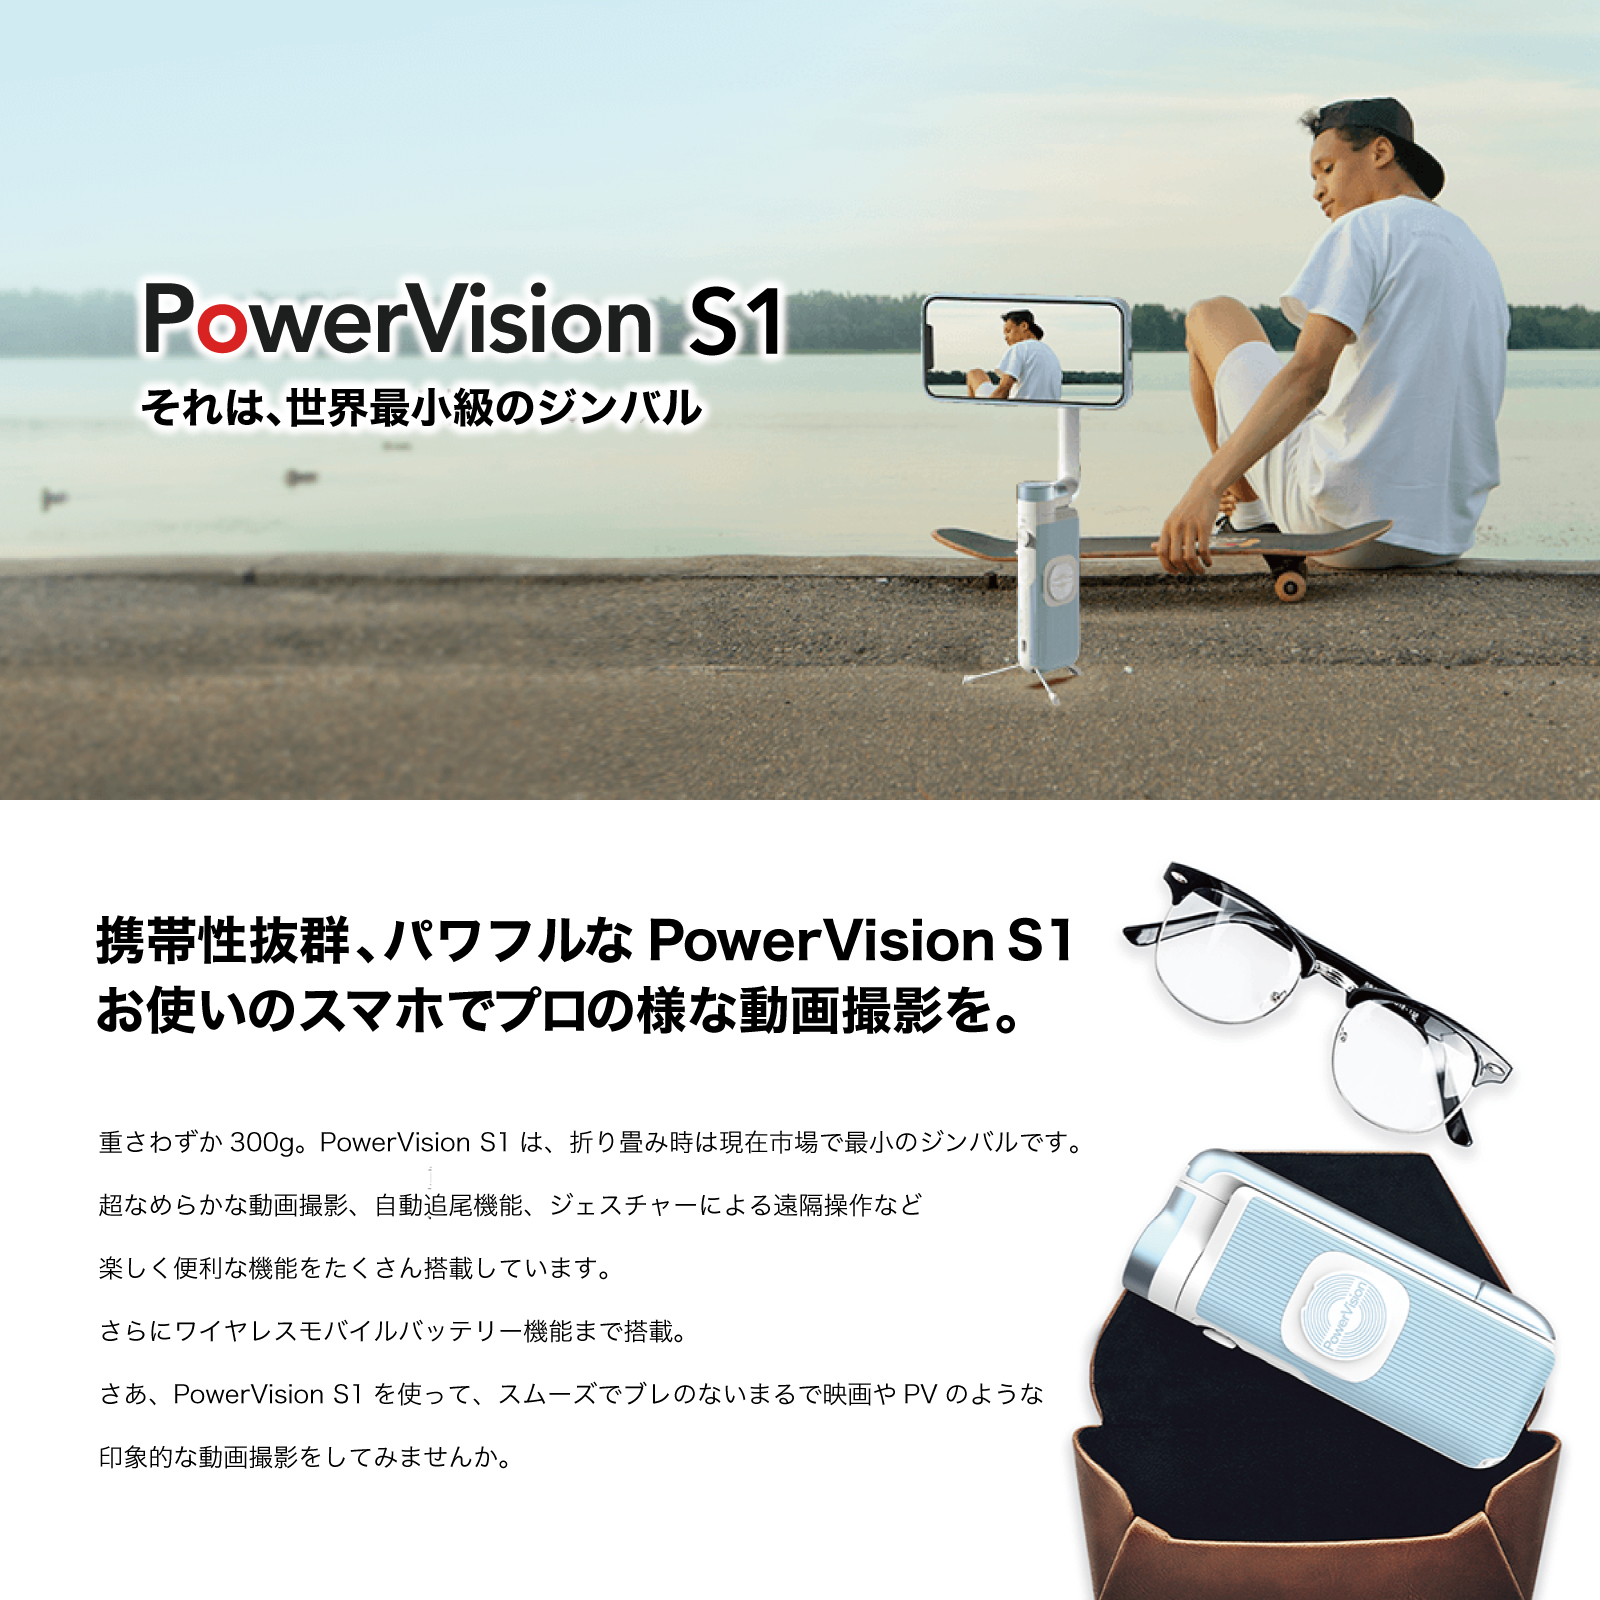 【色: スカイブルー】PowerVision スマートフォン用ジンバルカメラ -